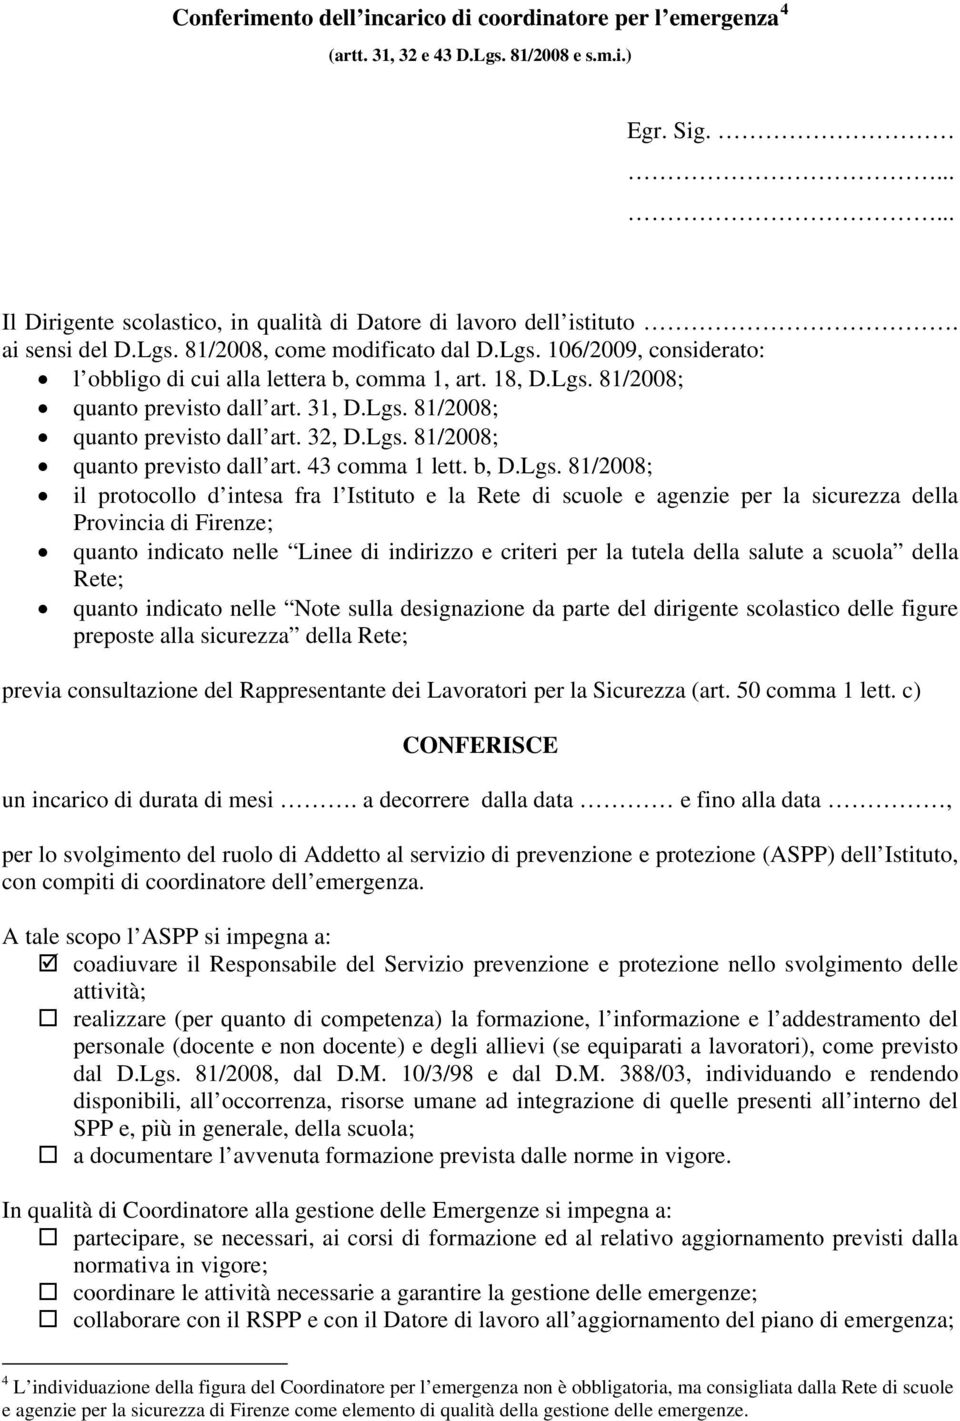 Lgs. 81/2008; quanto previsto dall art. 43 comma 1 lett. b, D.Lgs. 81/2008; il protocollo d intesa fra l Istituto e la Rete di scuole e agenzie per la sicurezza della Provincia di Firenze; quanto